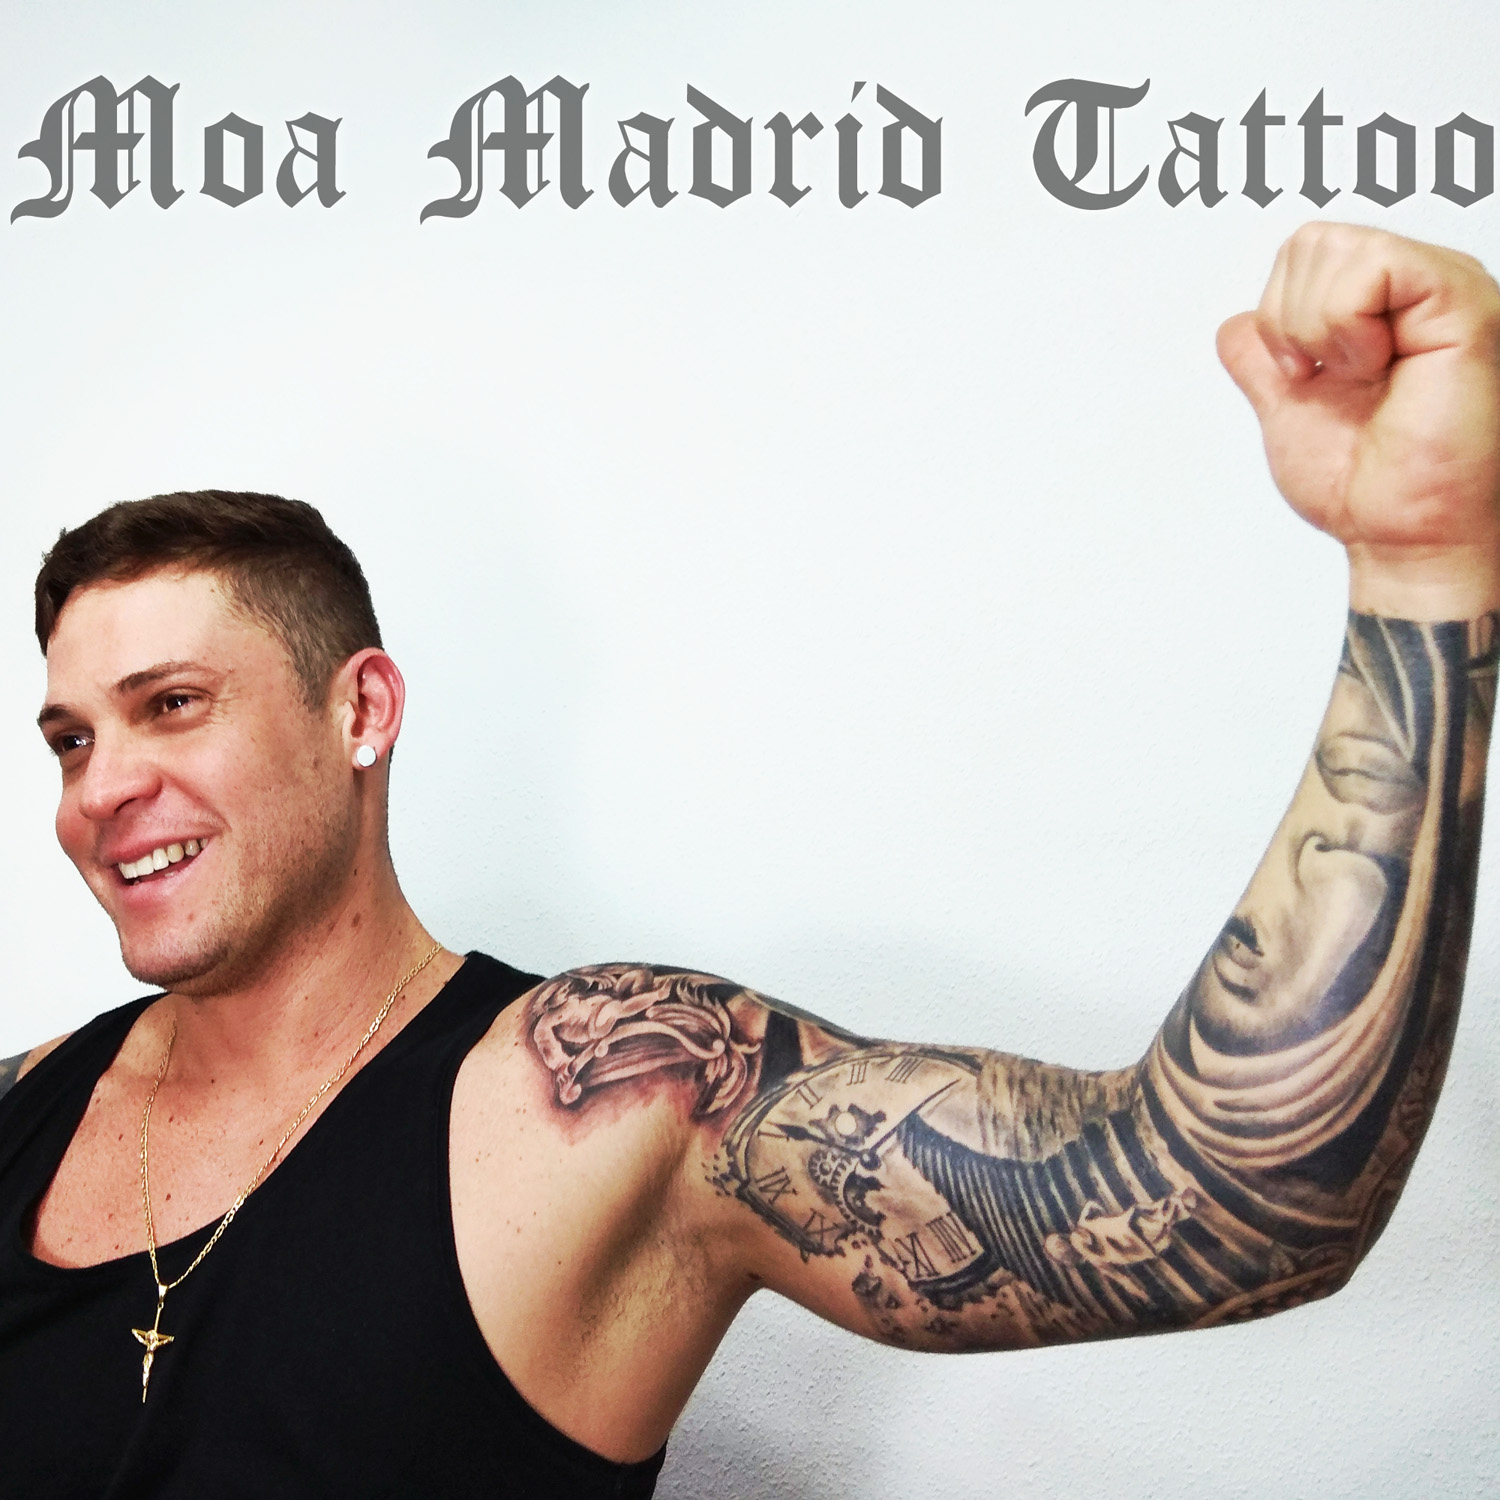 Un brazo entero muestra distintos tatuajes según desde donde se mire